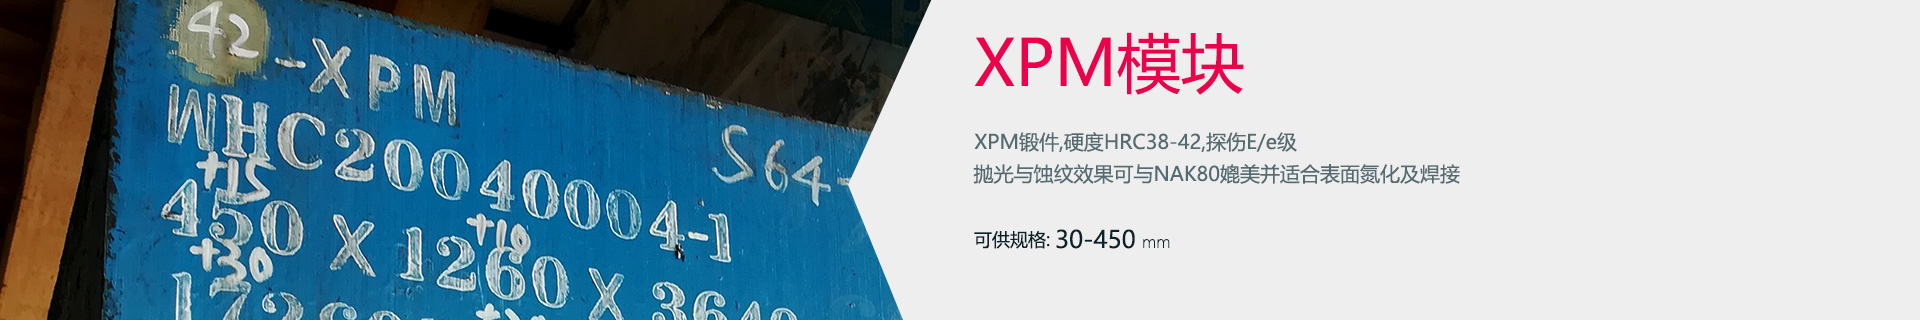 XPM模块